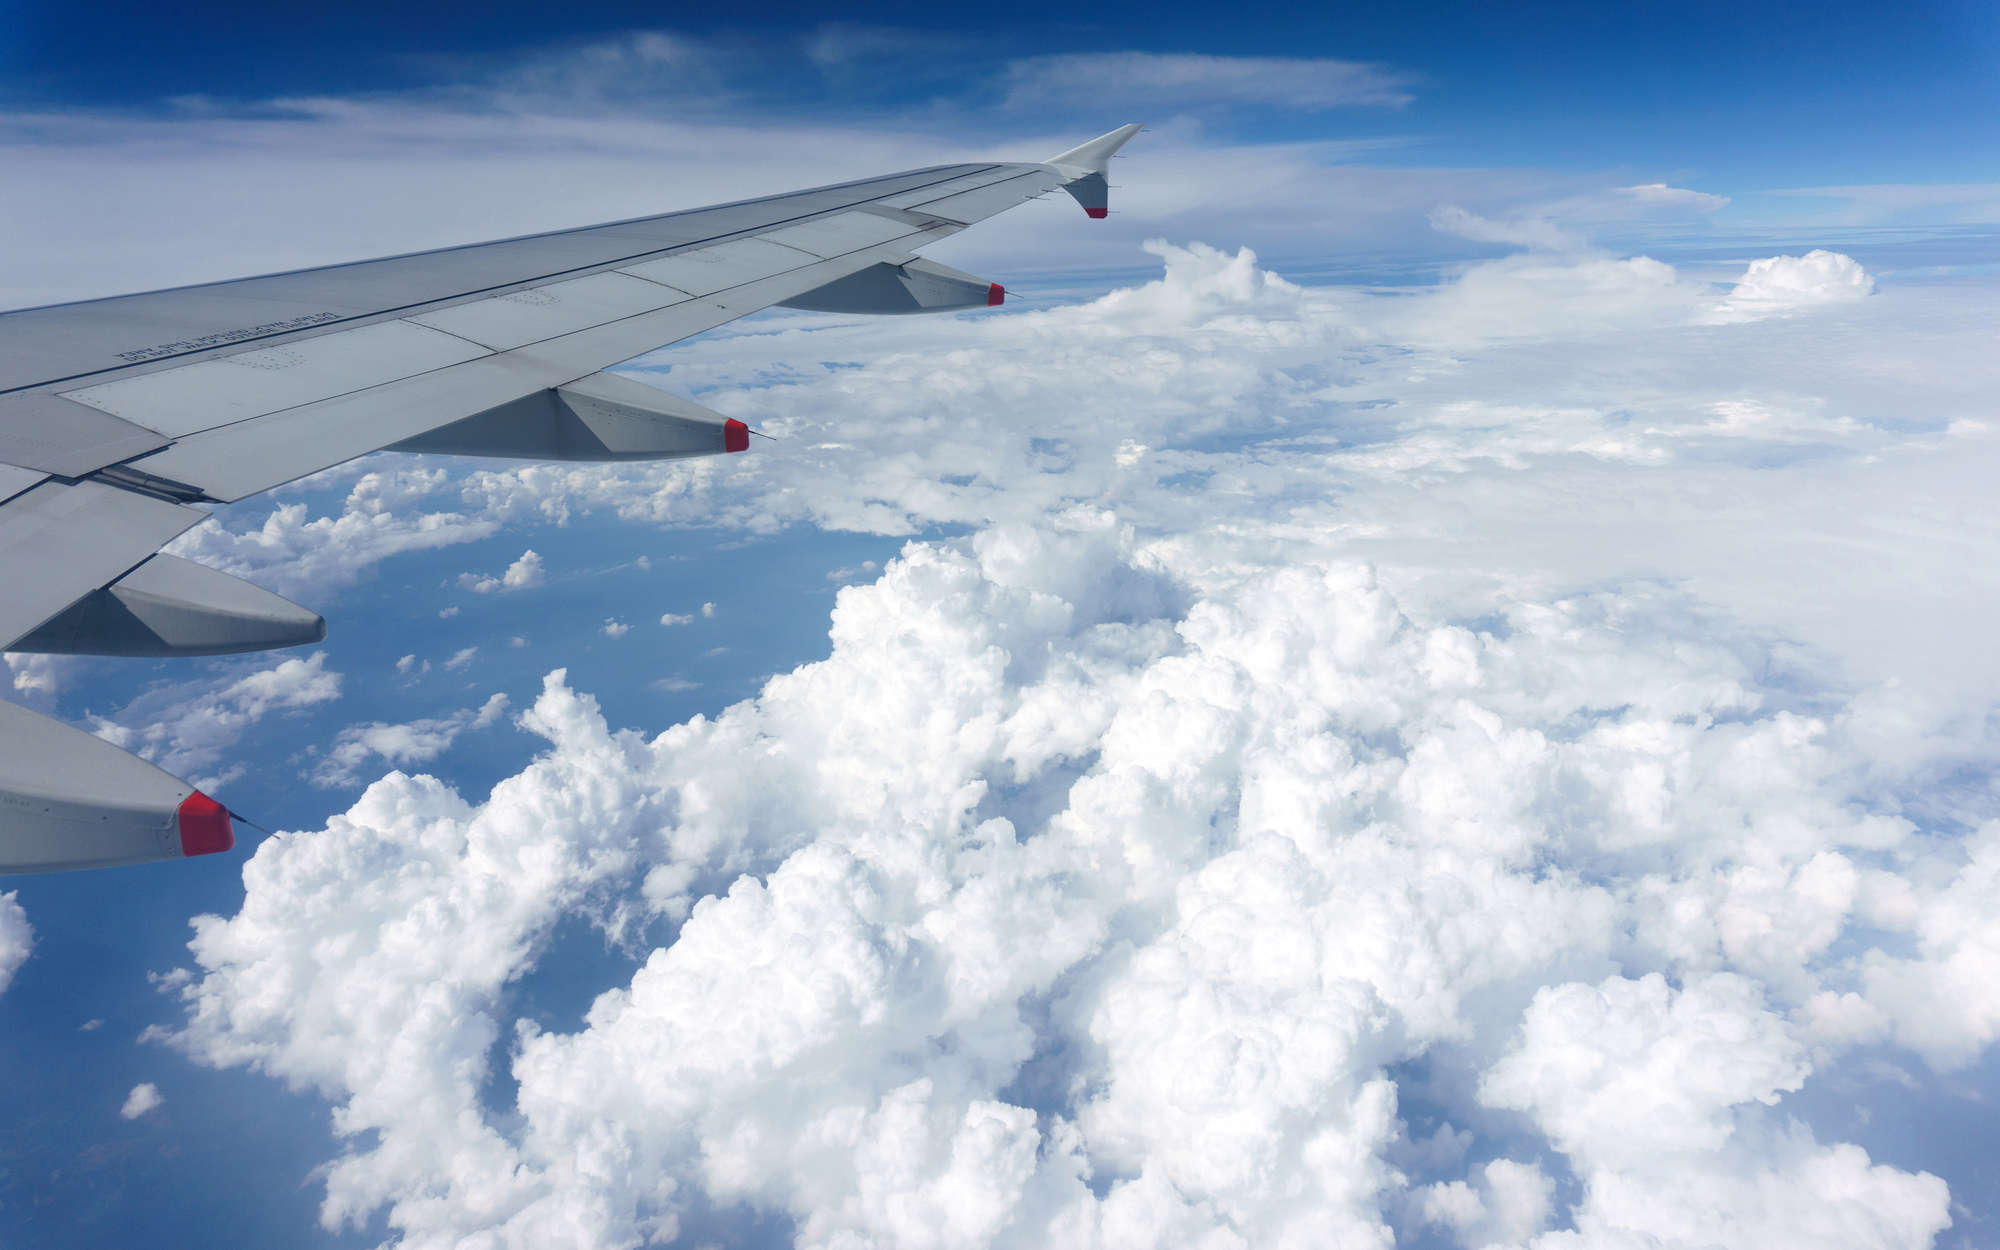             Fototapete Flugzeug über den Wolken – Strukturiertes Vlies
        